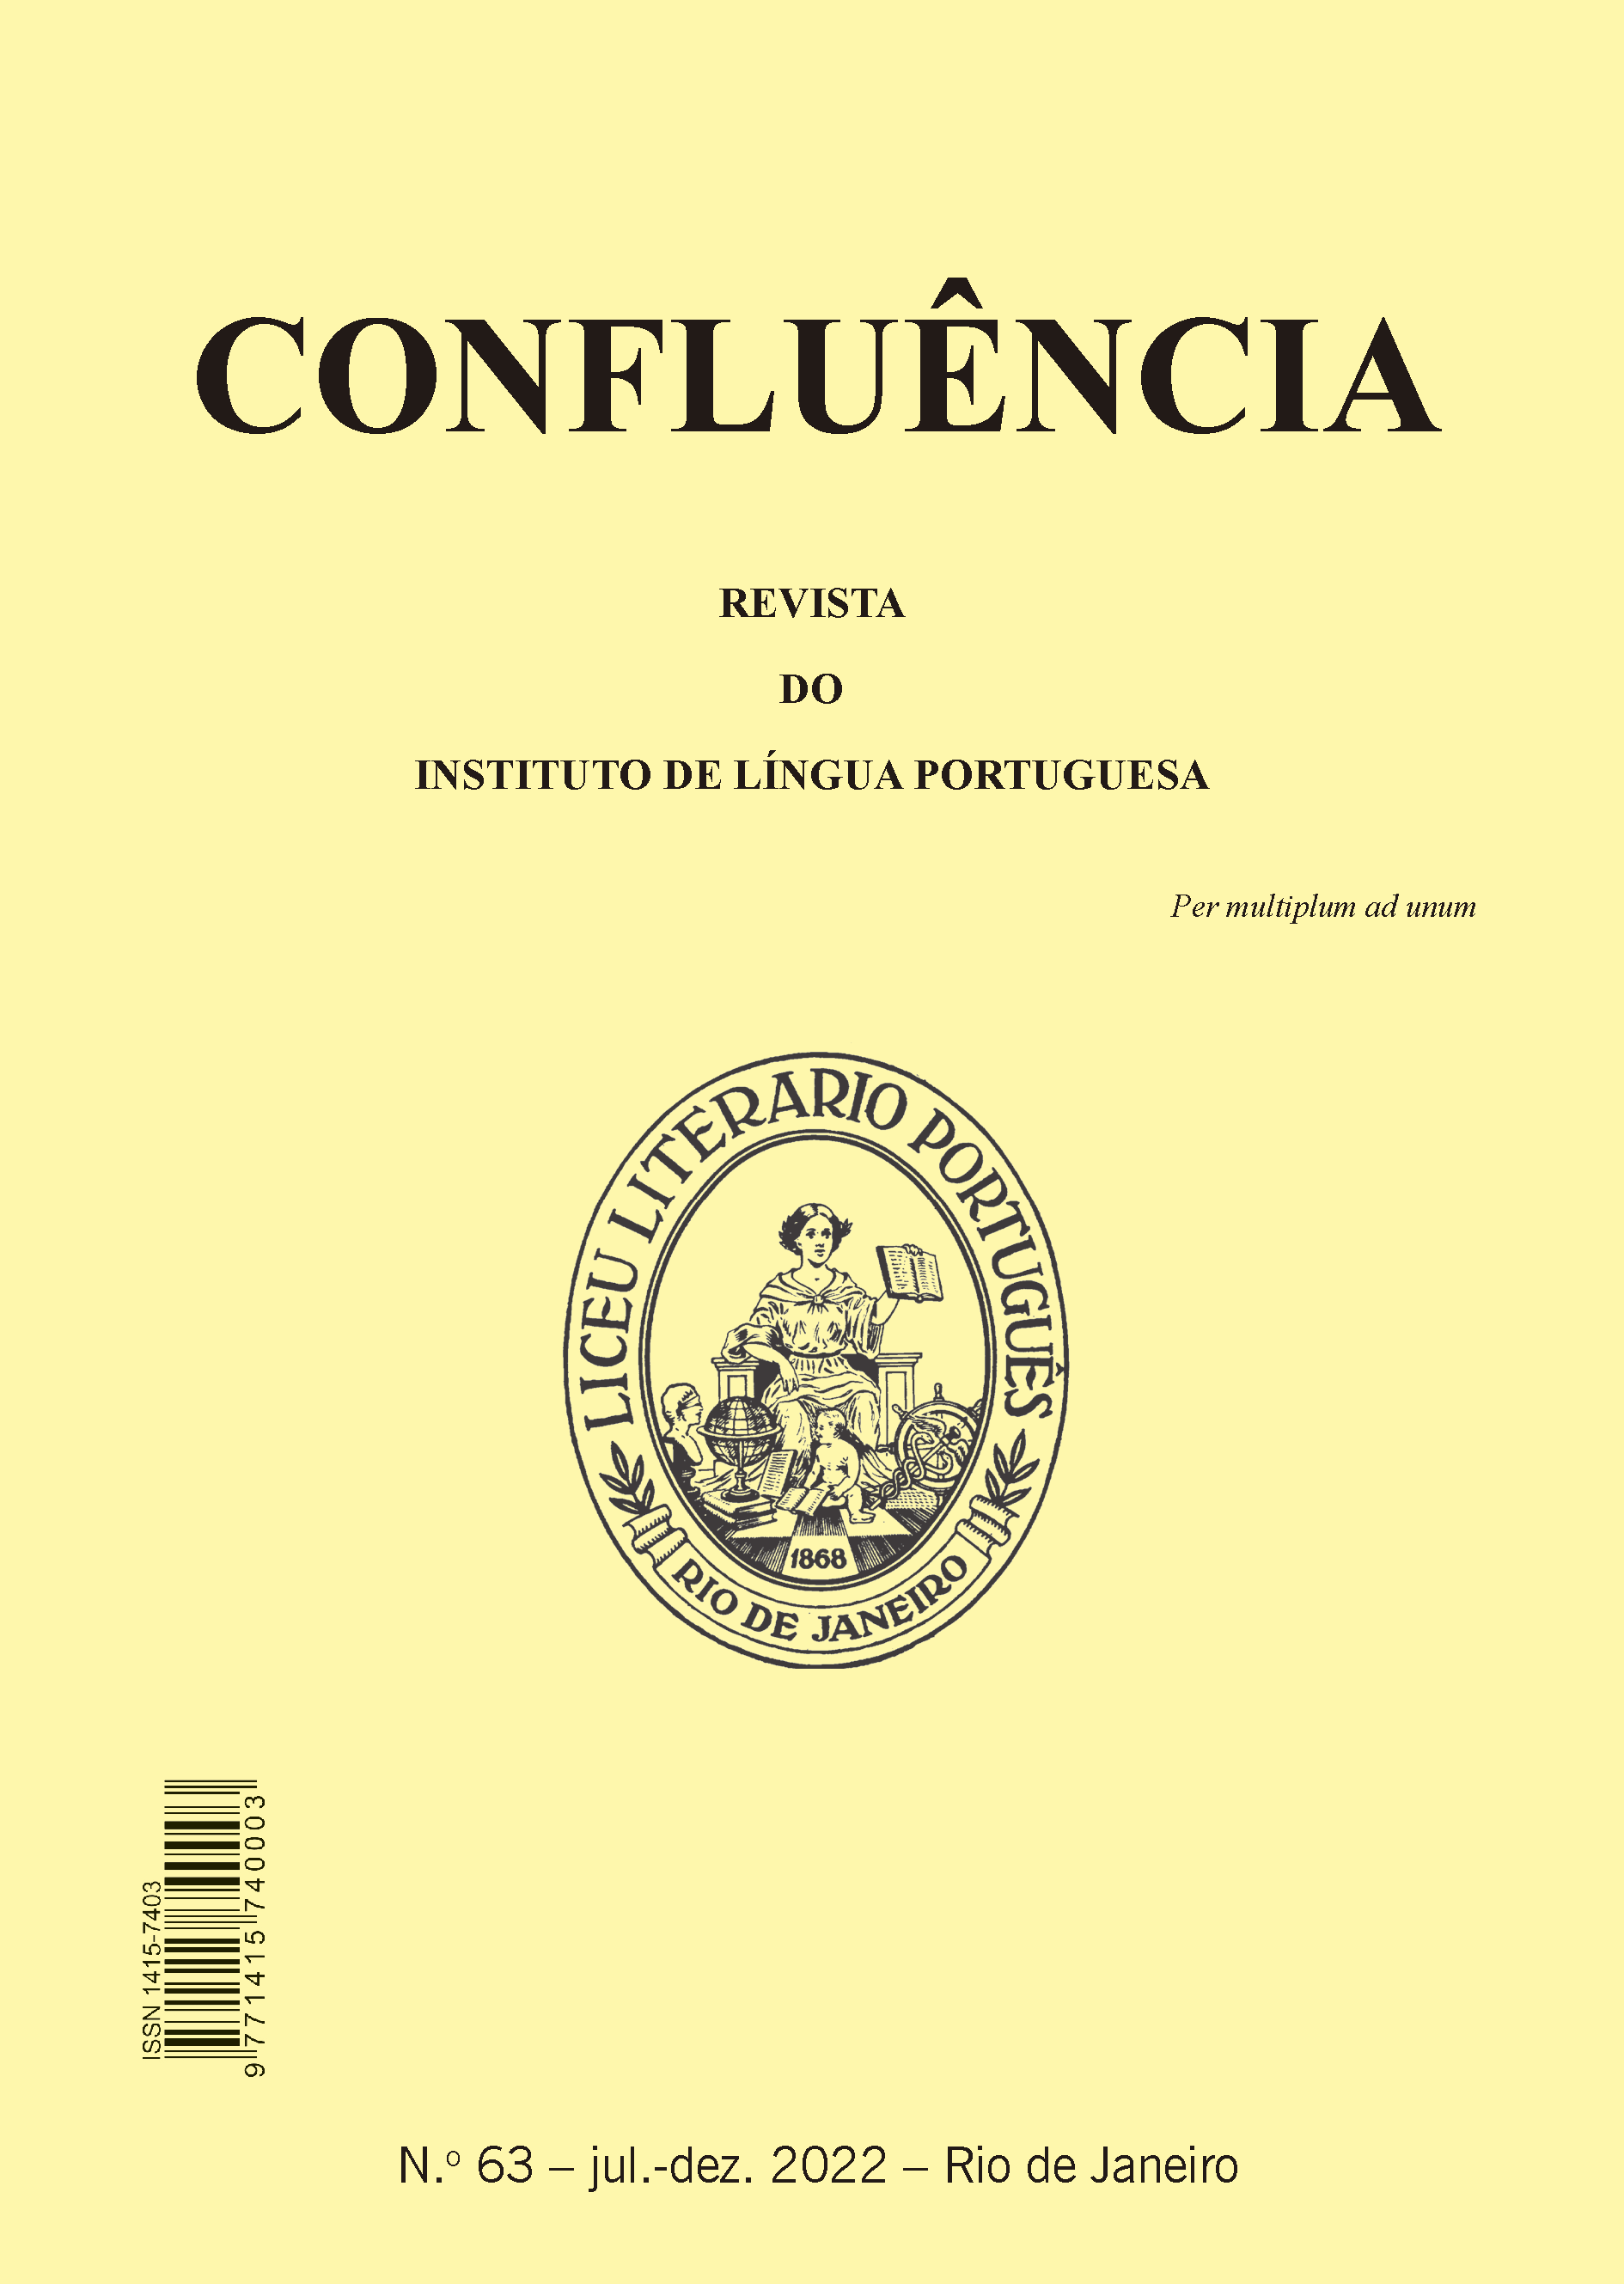 Capa da Confluência 63